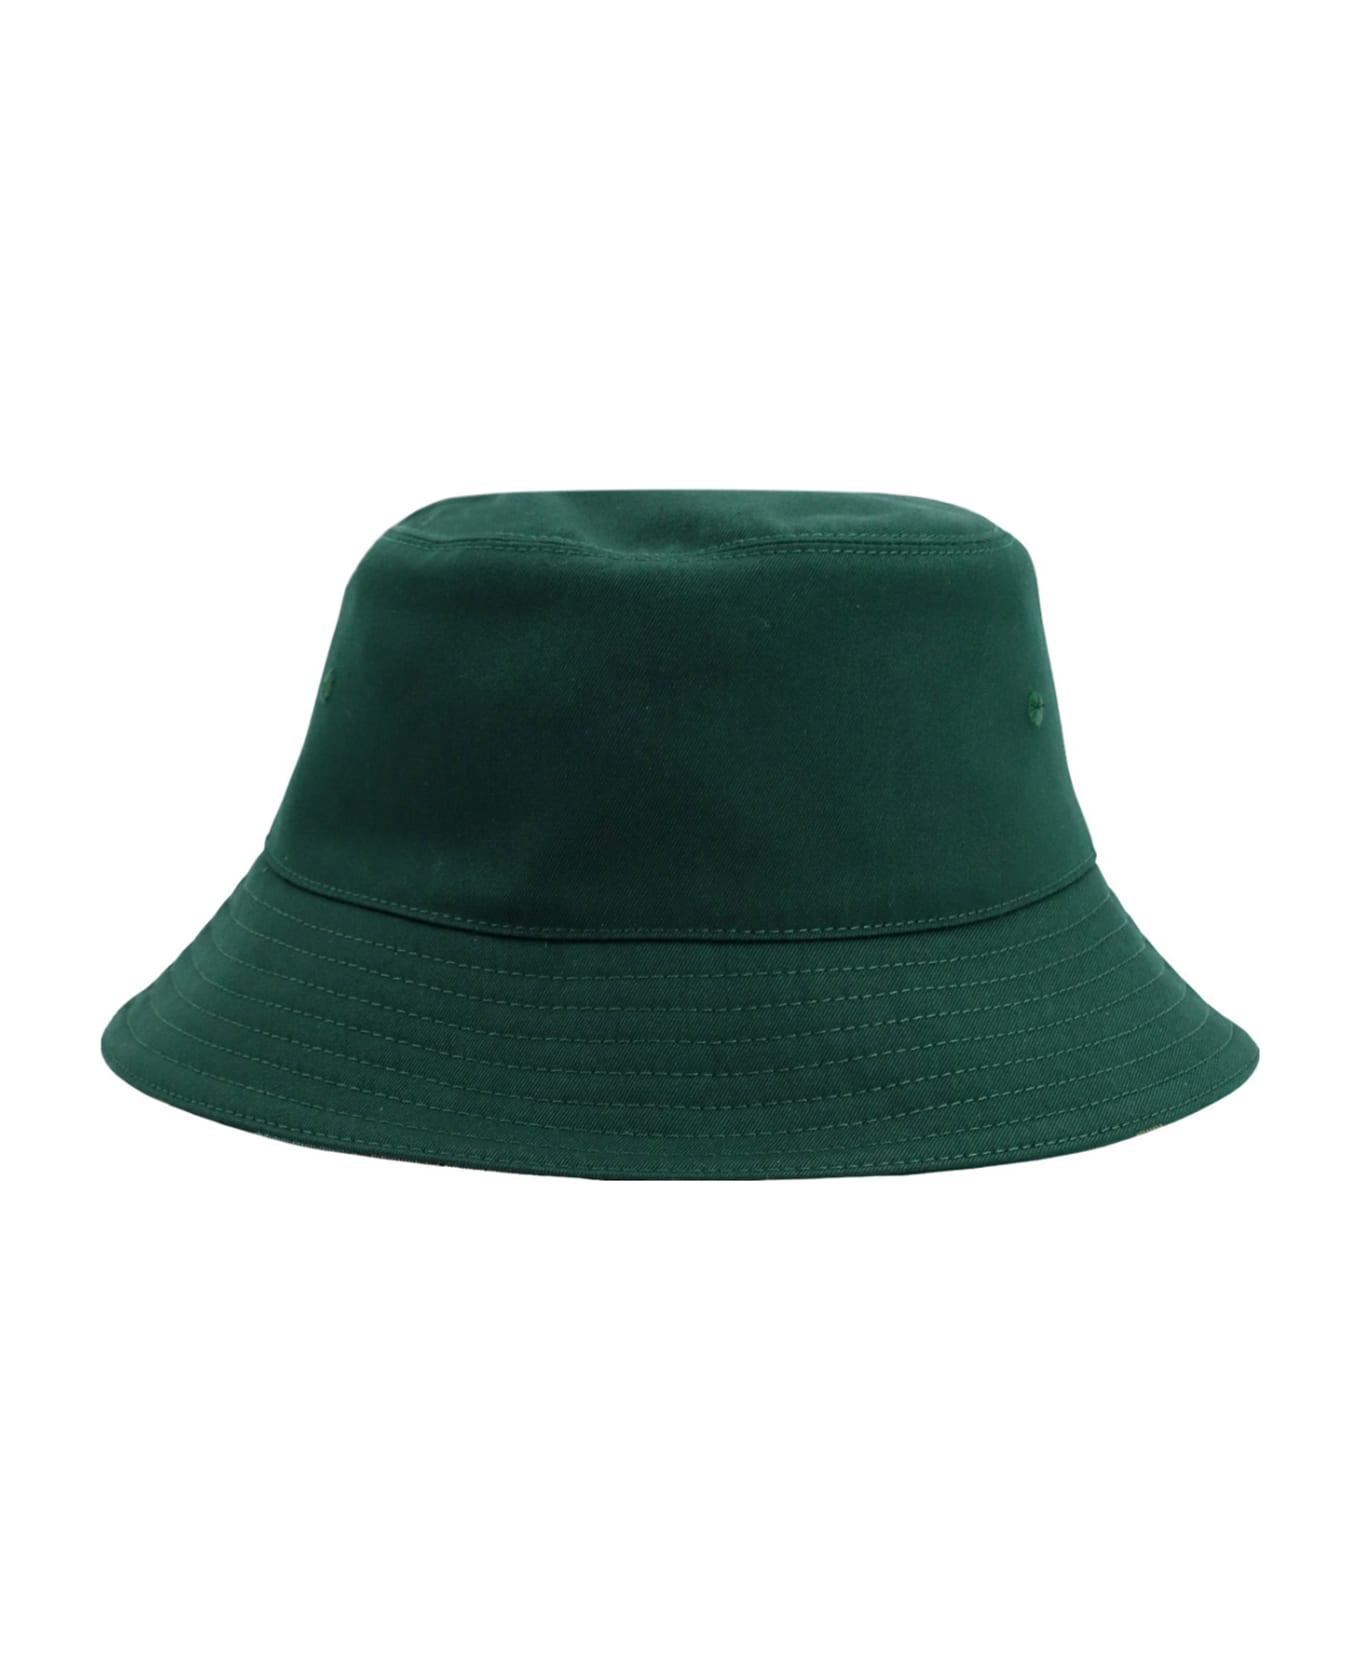 Burberry Cloche - Green 帽子